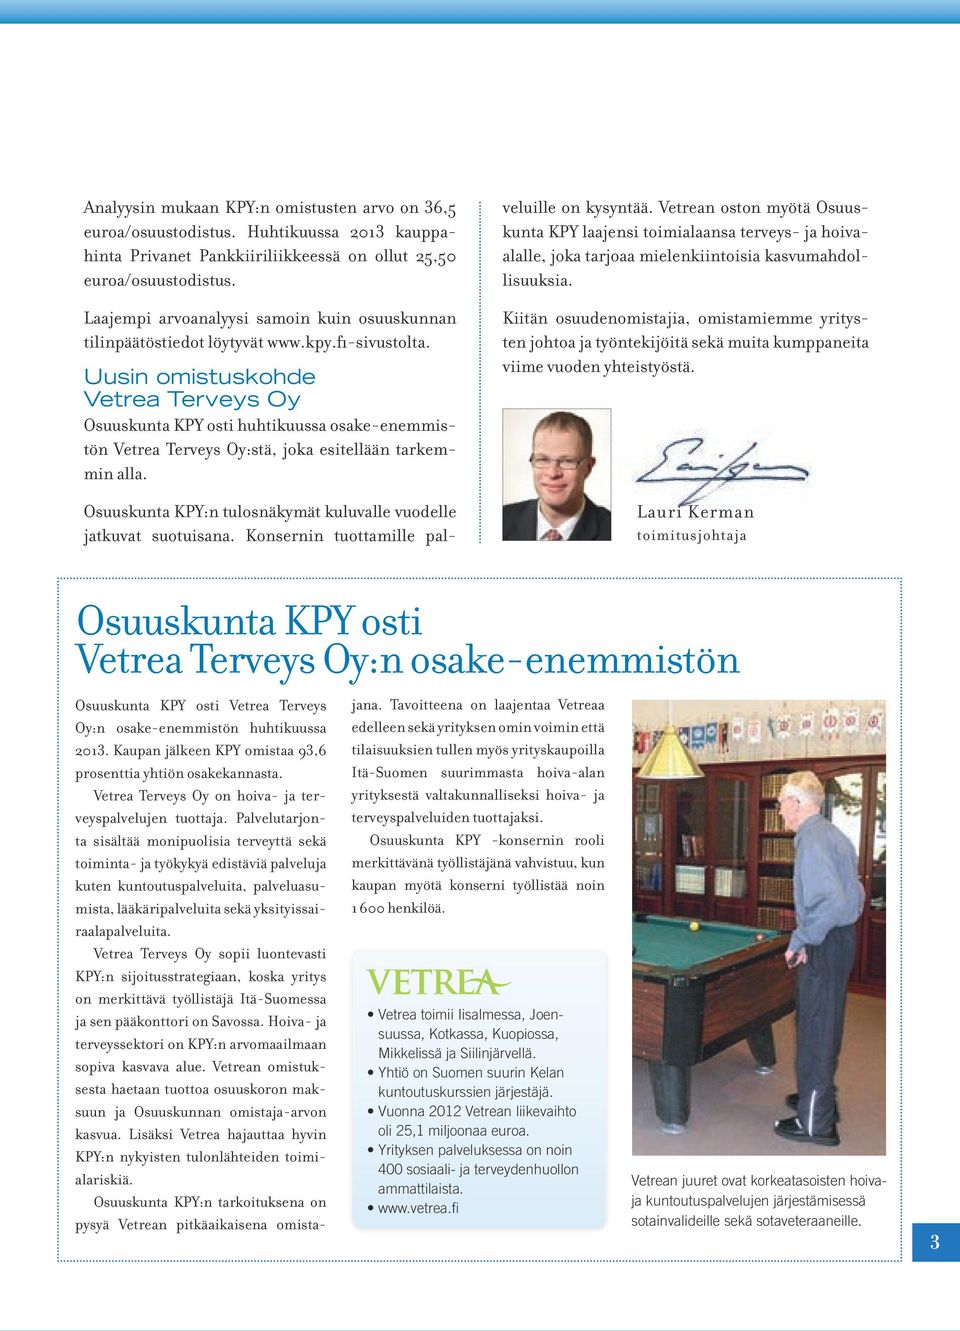 Uusin omistuskohde Vetrea Terveys Oy Osuuskunta KPY osti huhtikuussa osake-enemmistön Vetrea Terveys Oy:stä, joka esitellään tarkemmin alla.